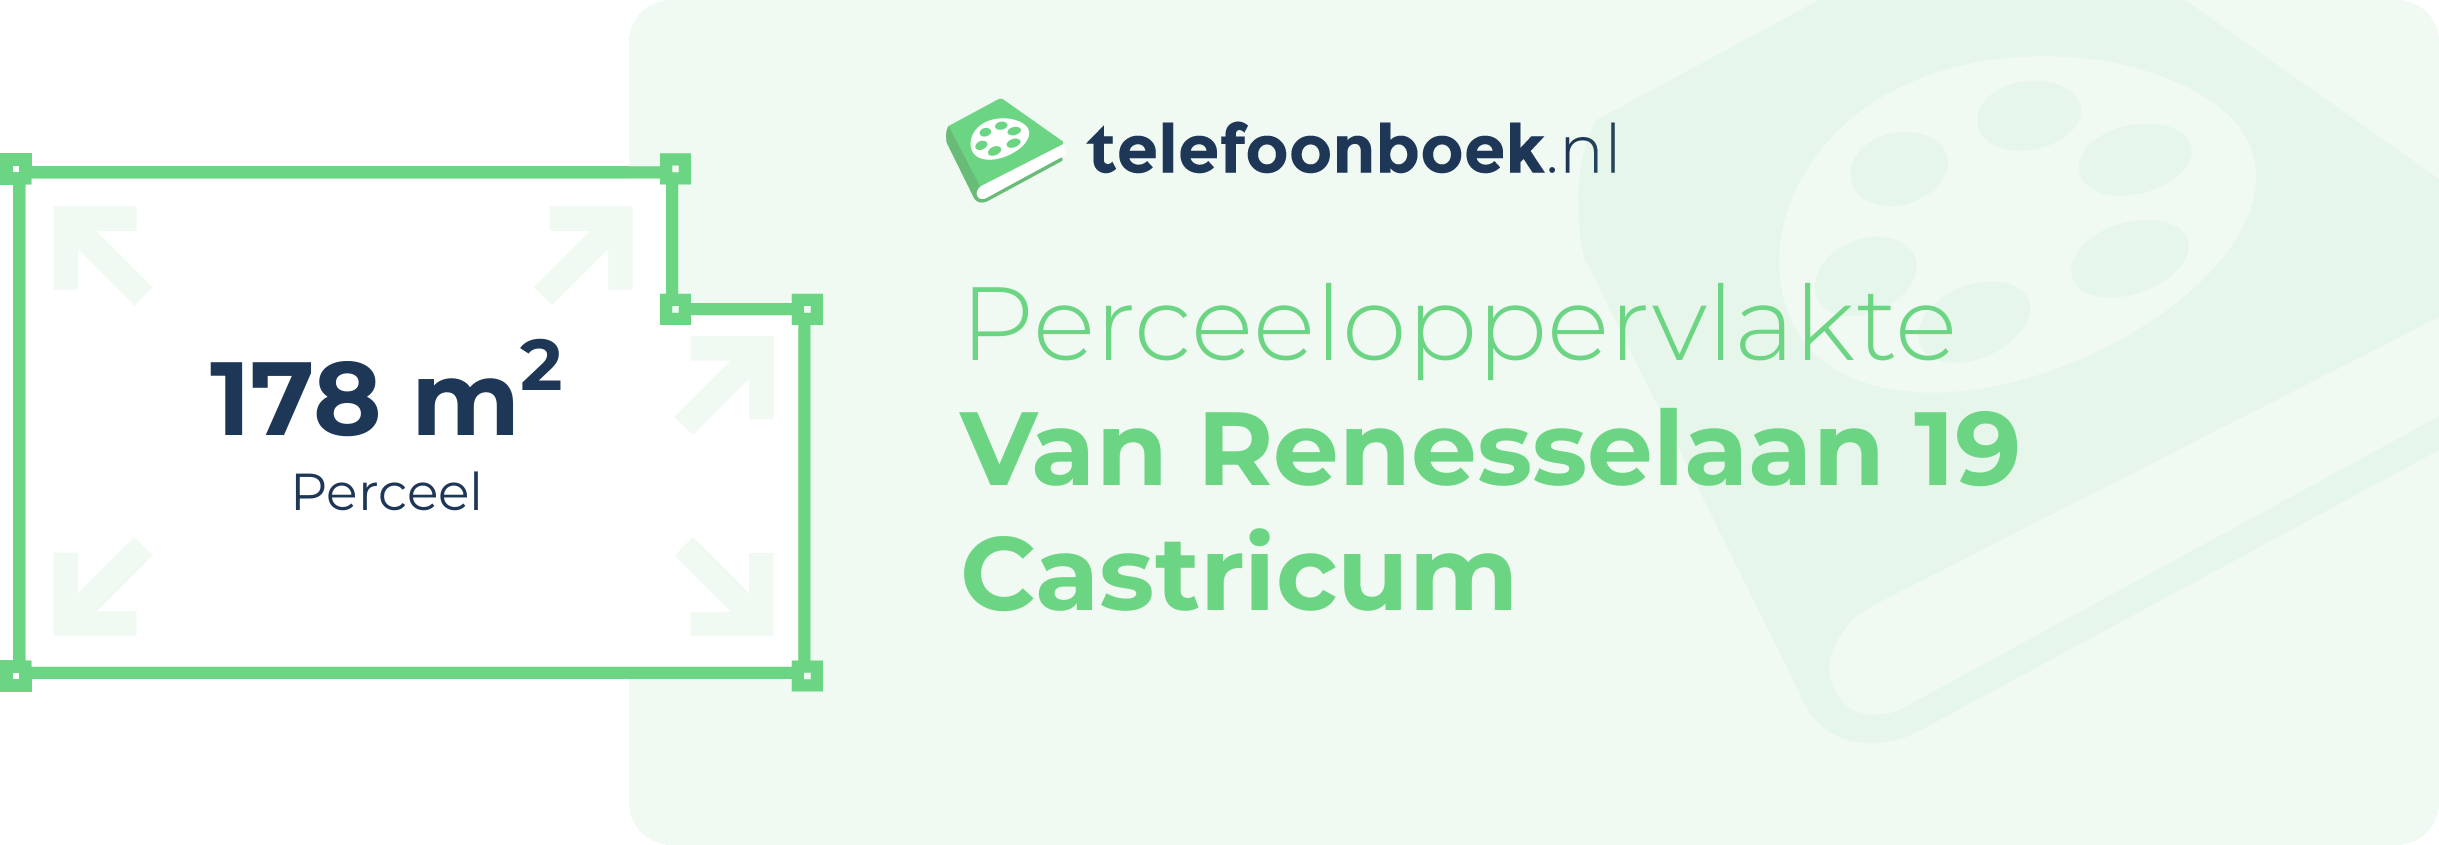 Perceeloppervlakte Van Renesselaan 19 Castricum